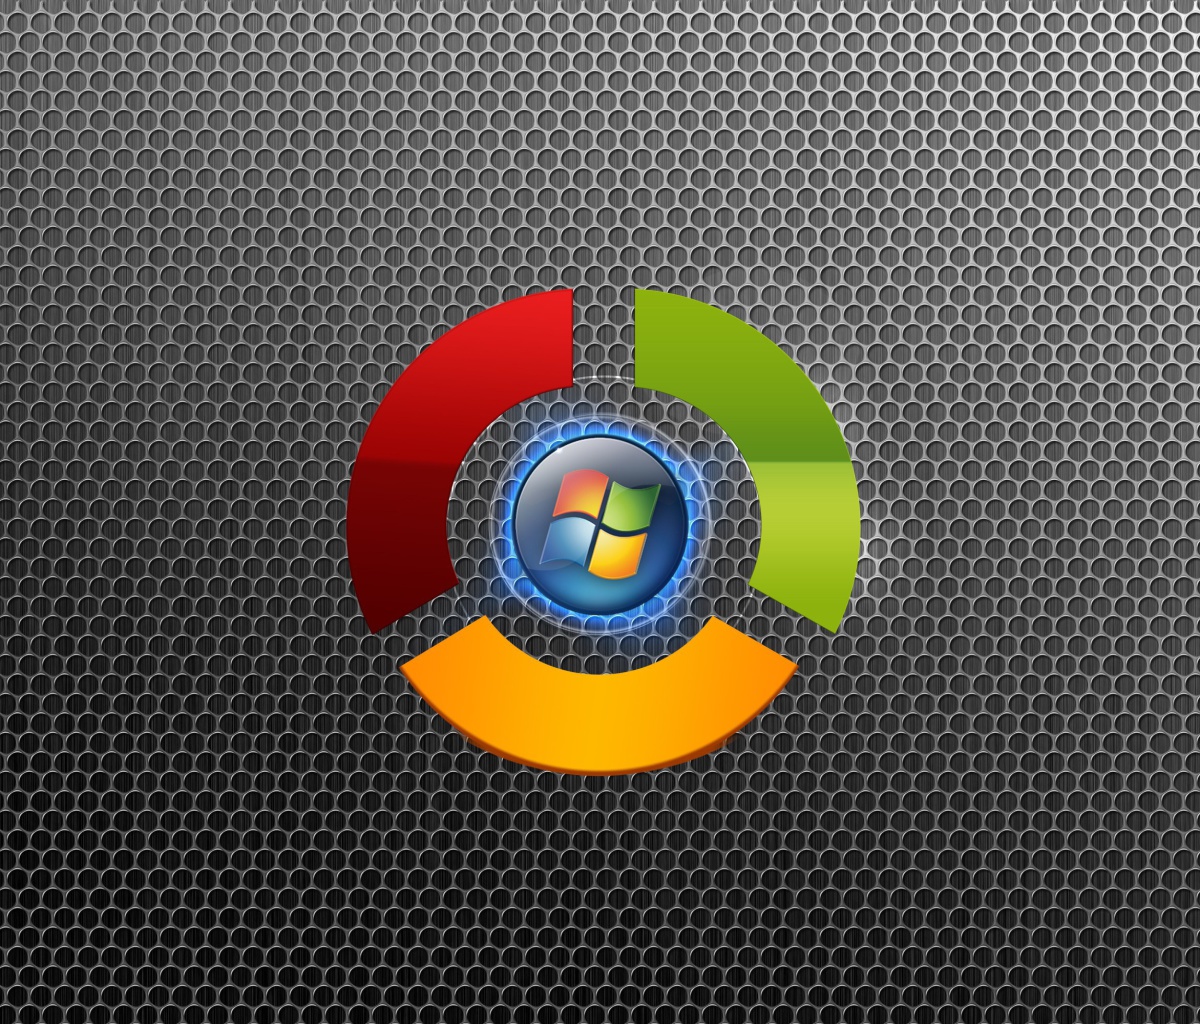 Das Google Chrome OS Wallpaper 1200x1024